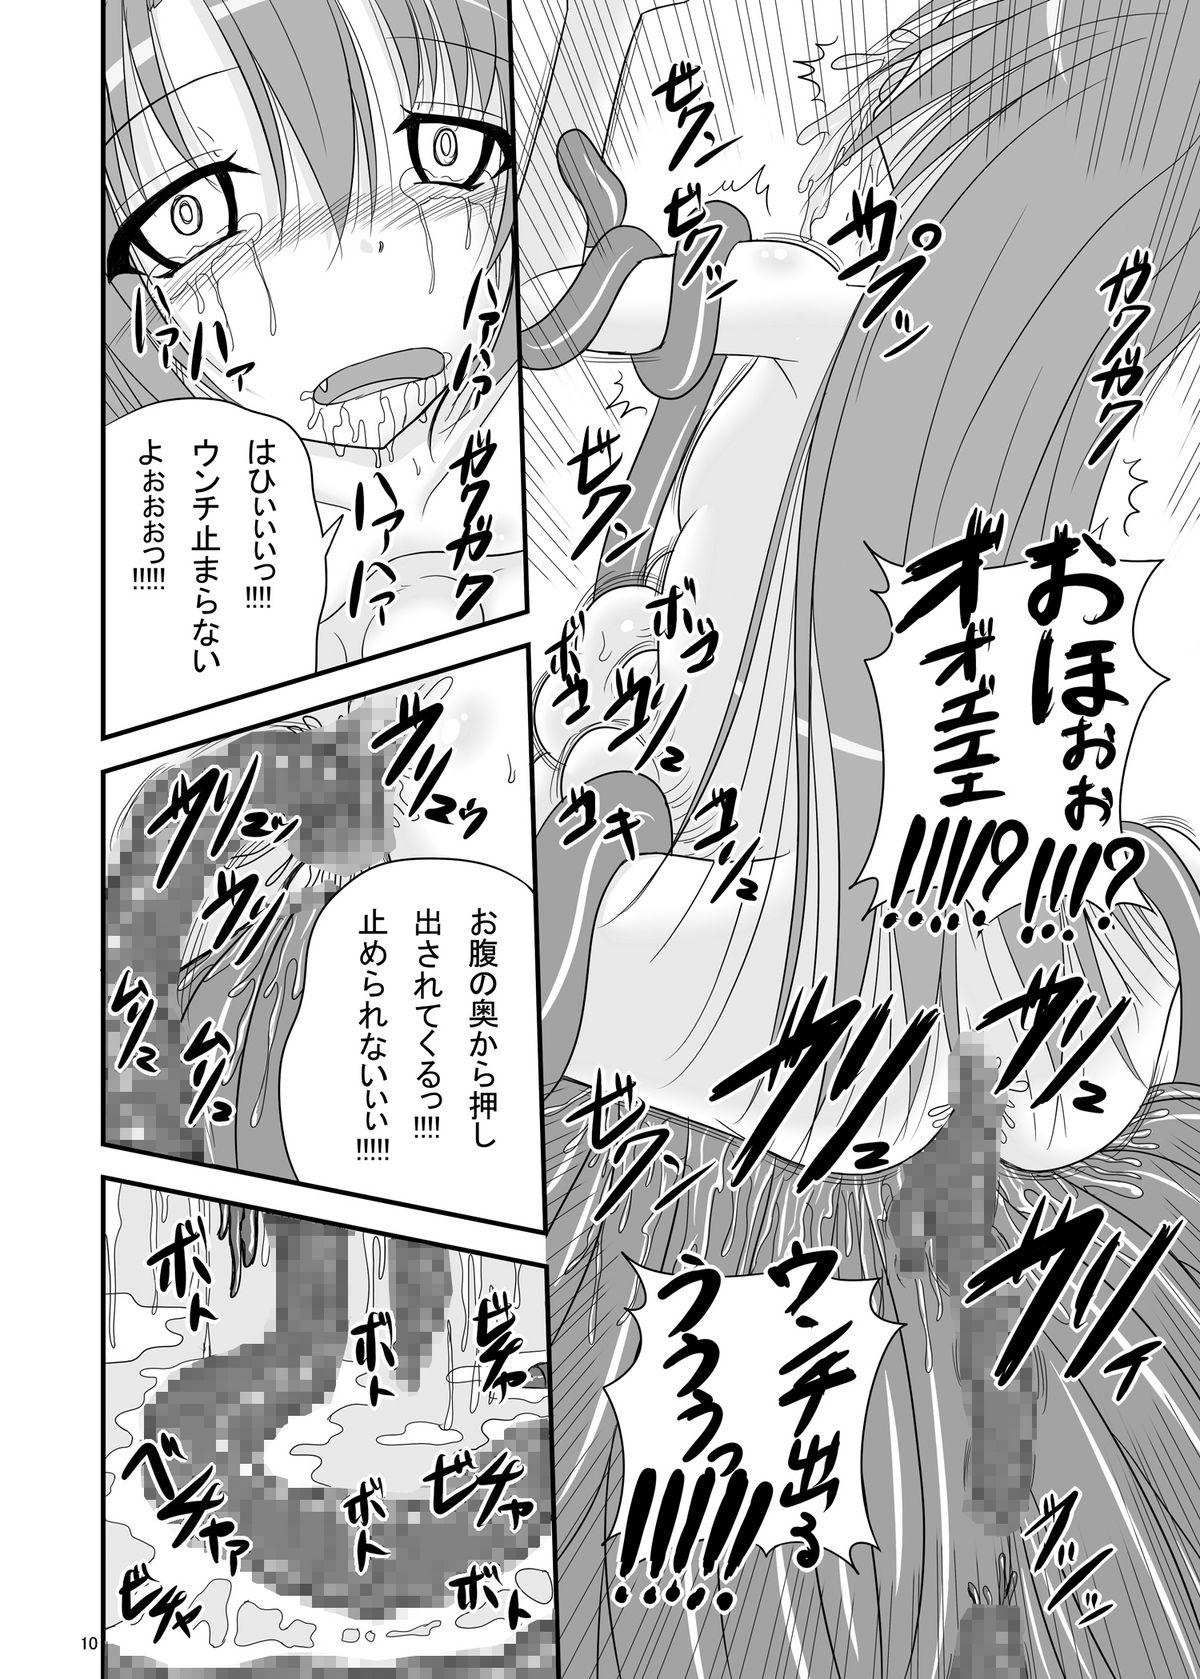 Candid Itsuka Zenshin Funsha no Kuso Usagi - Itsuka tenma no kuro usagi Horny Sluts - Page 10